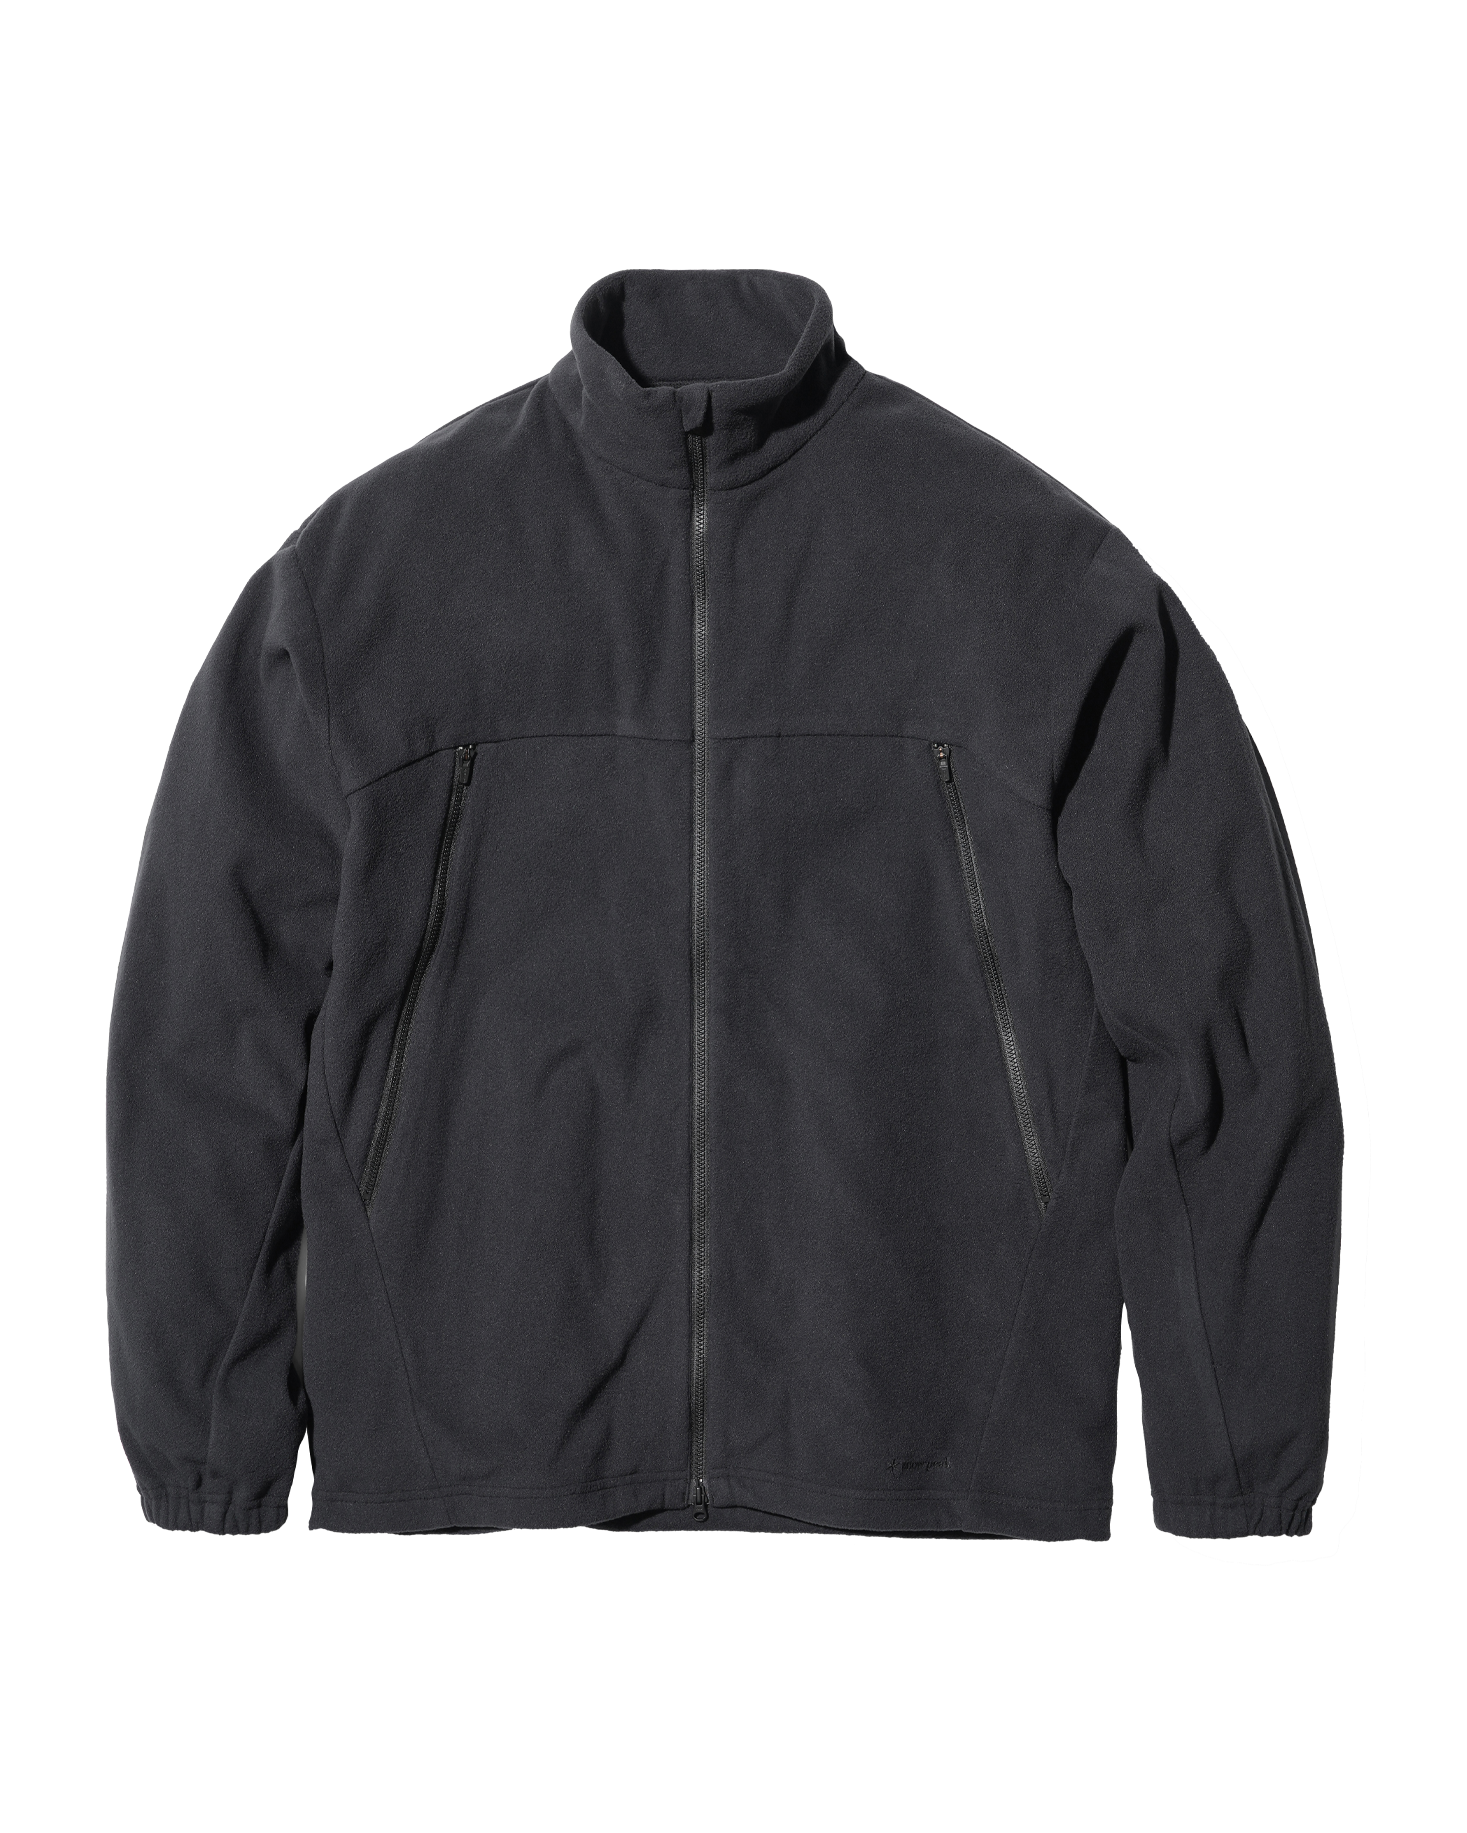 Micro Fleece Jacket